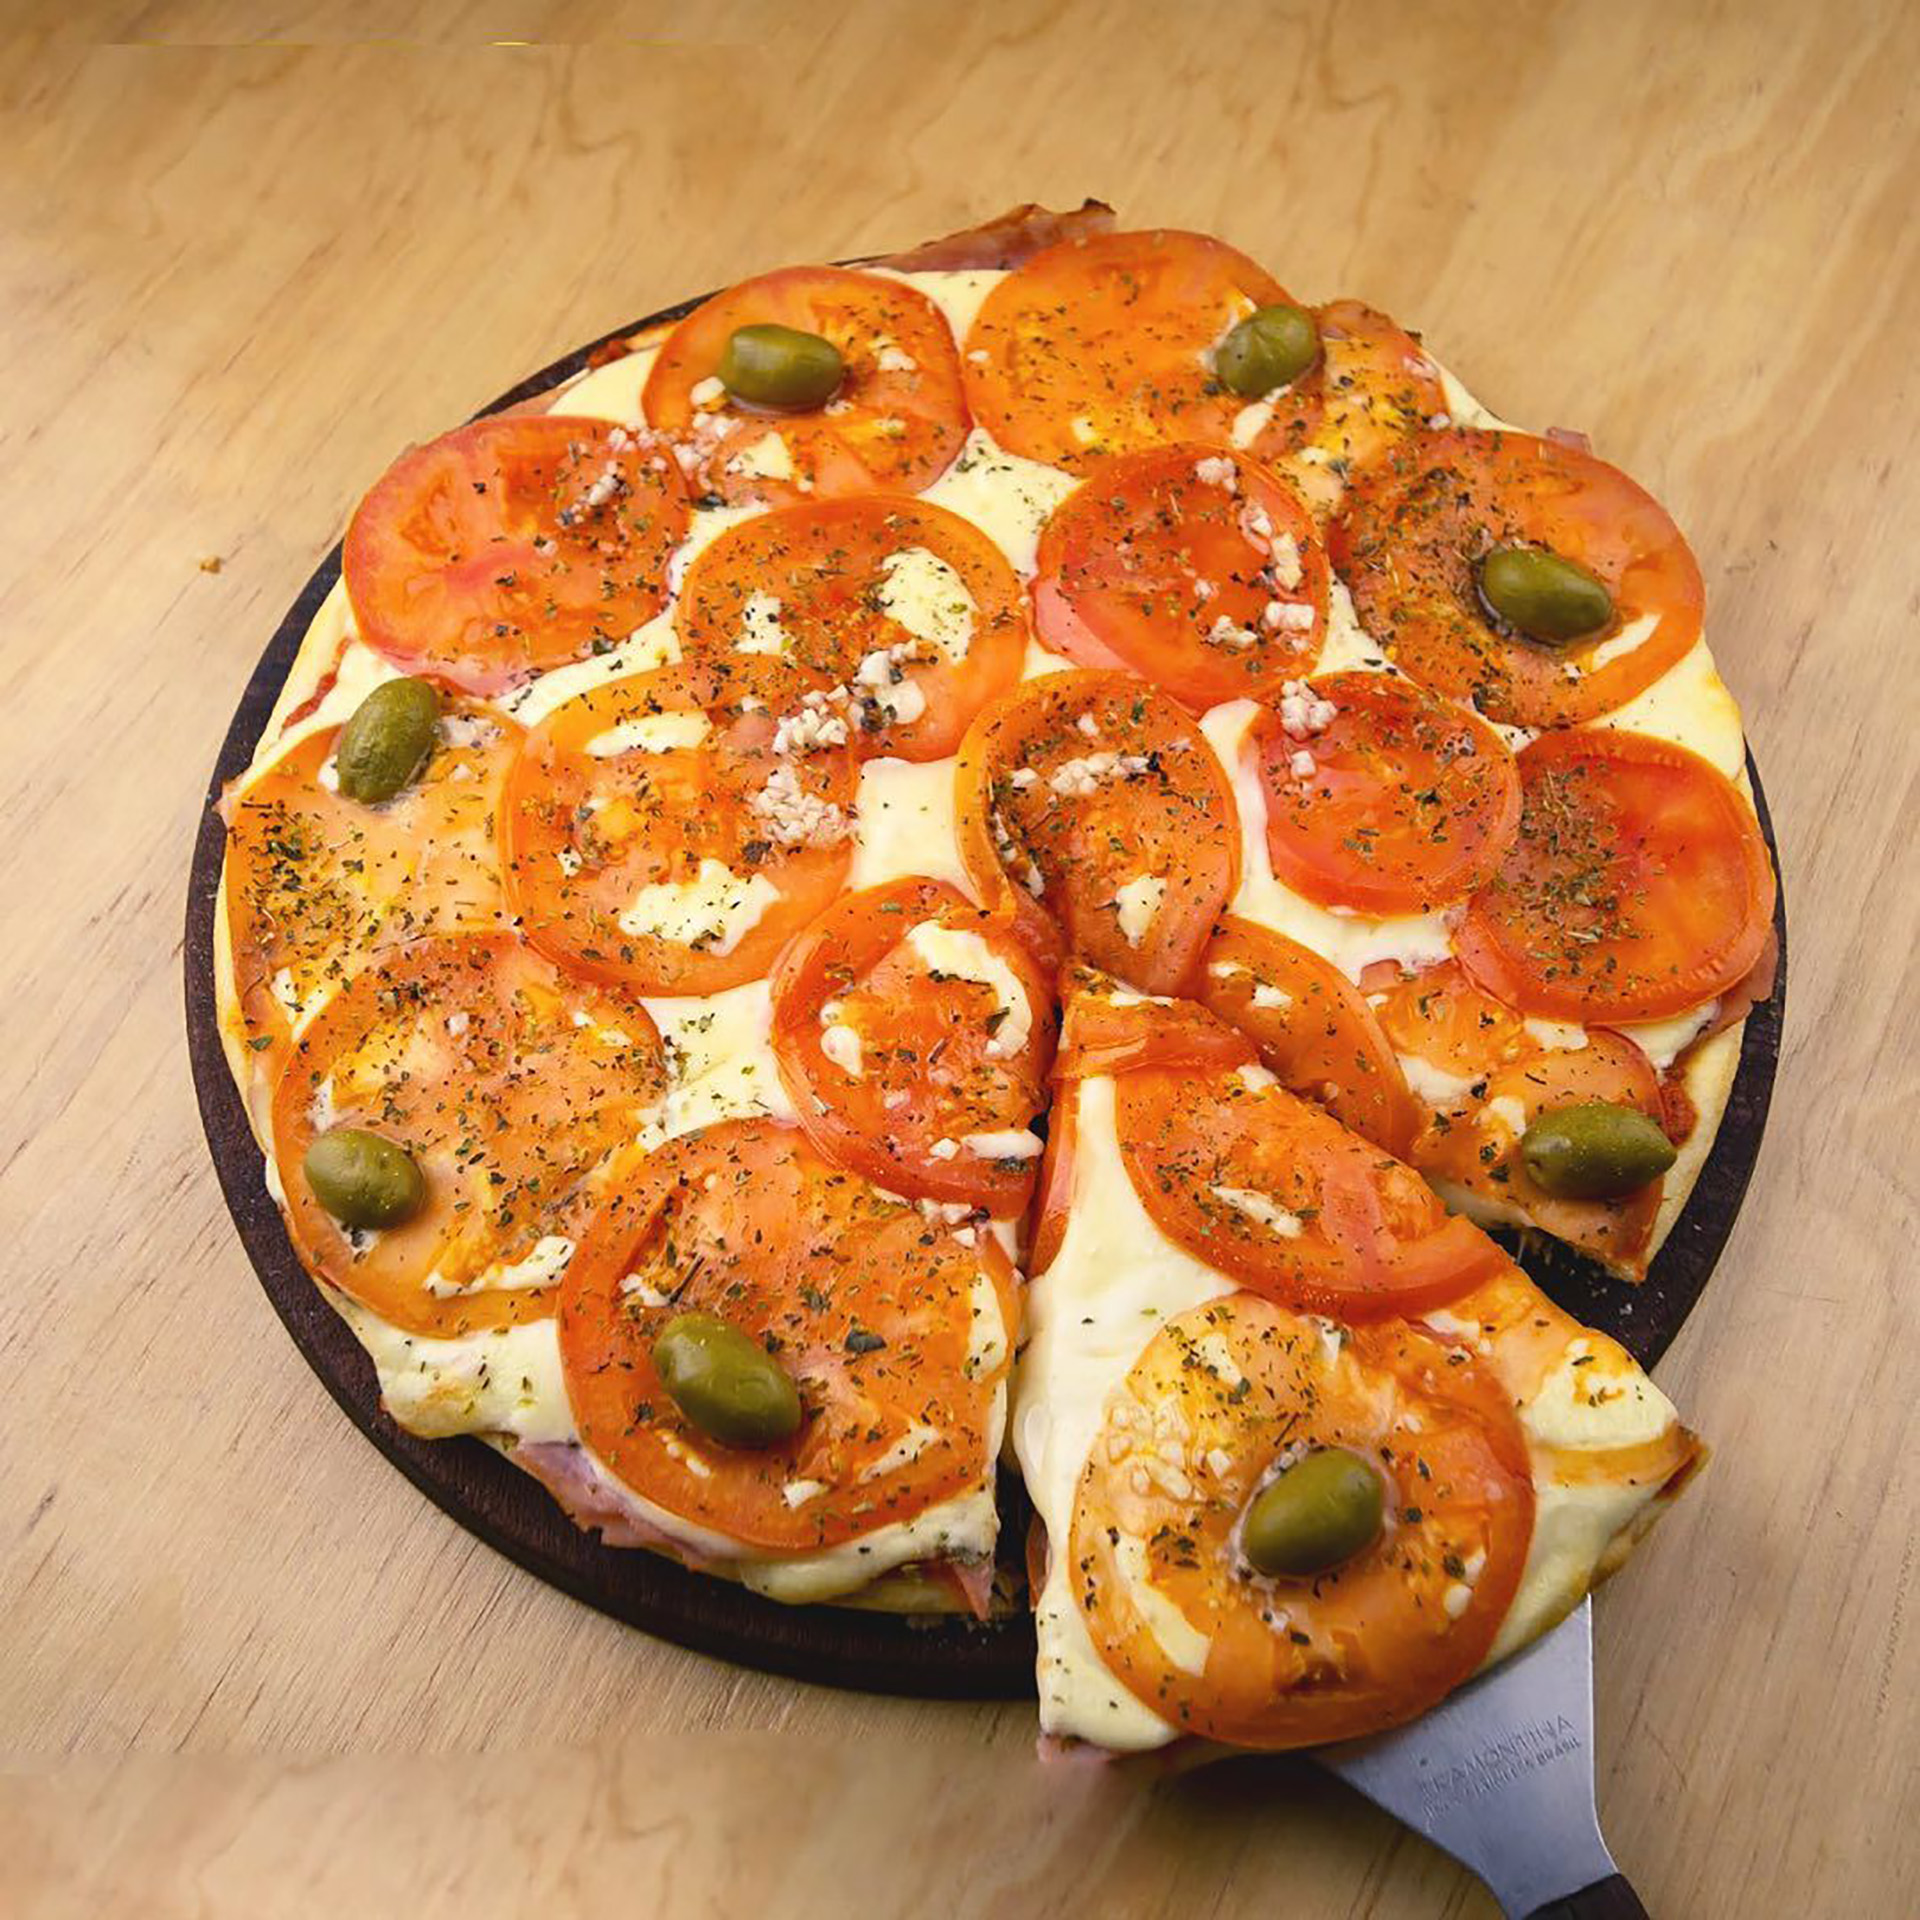 La textura de la pizza al microondas queda poco crujiente y "gomosa"